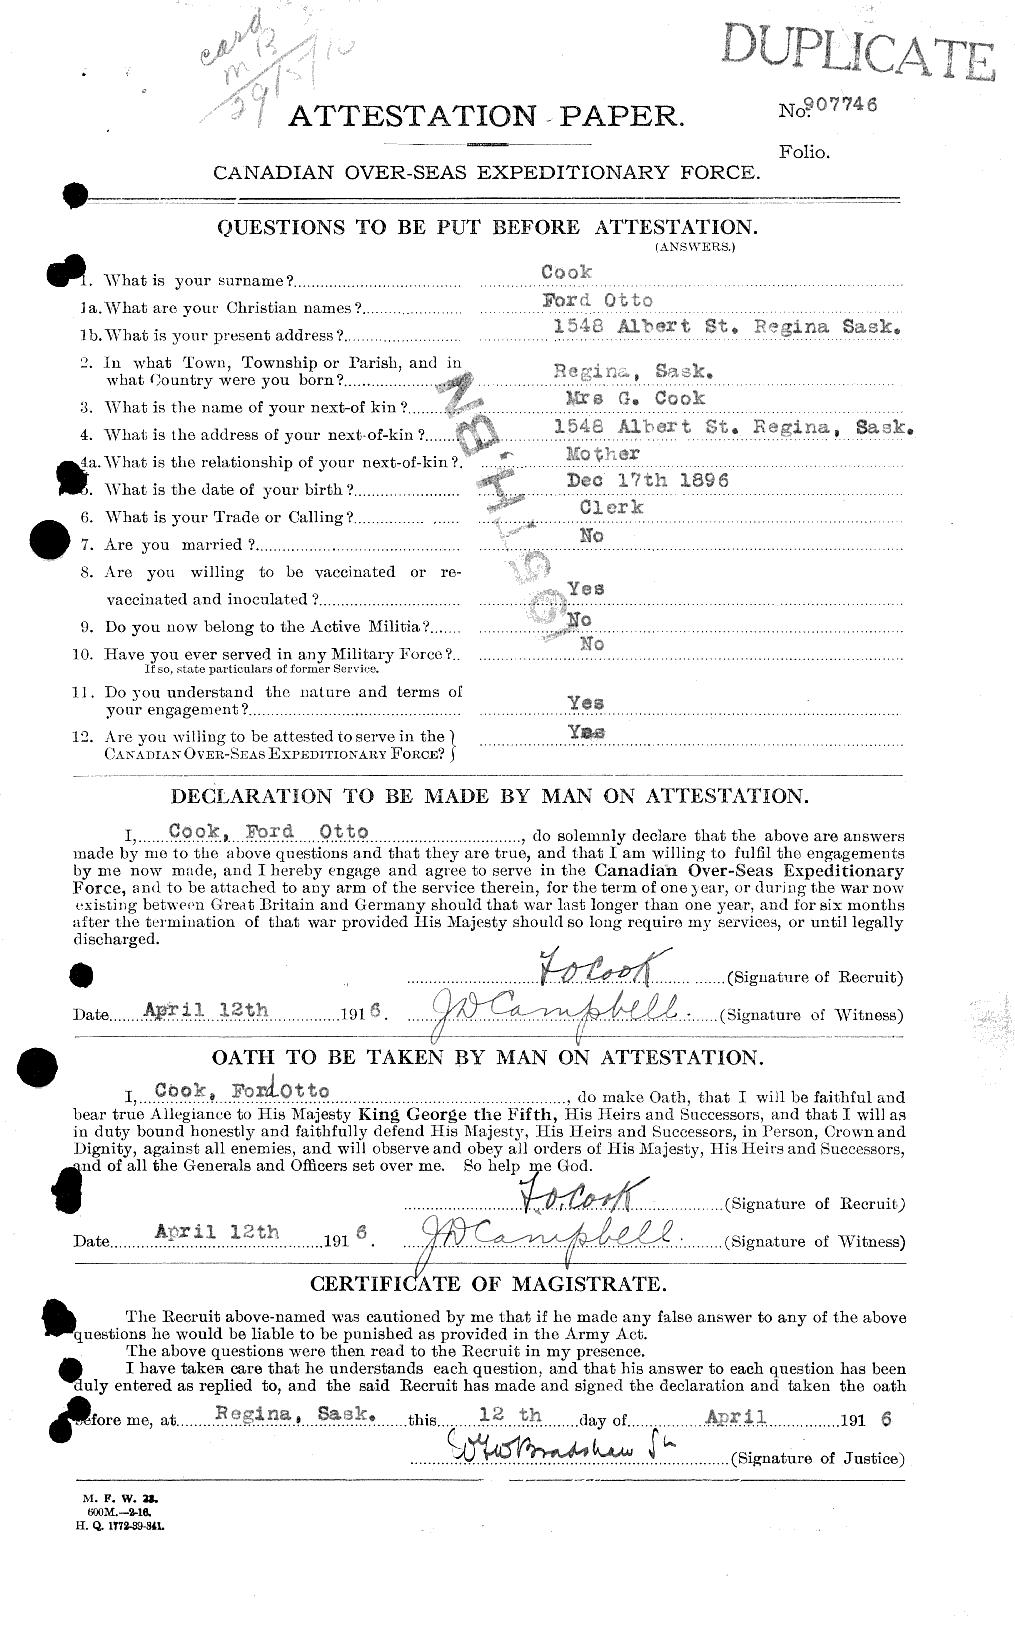 Dossiers du Personnel de la Première Guerre mondiale - CEC 038785a